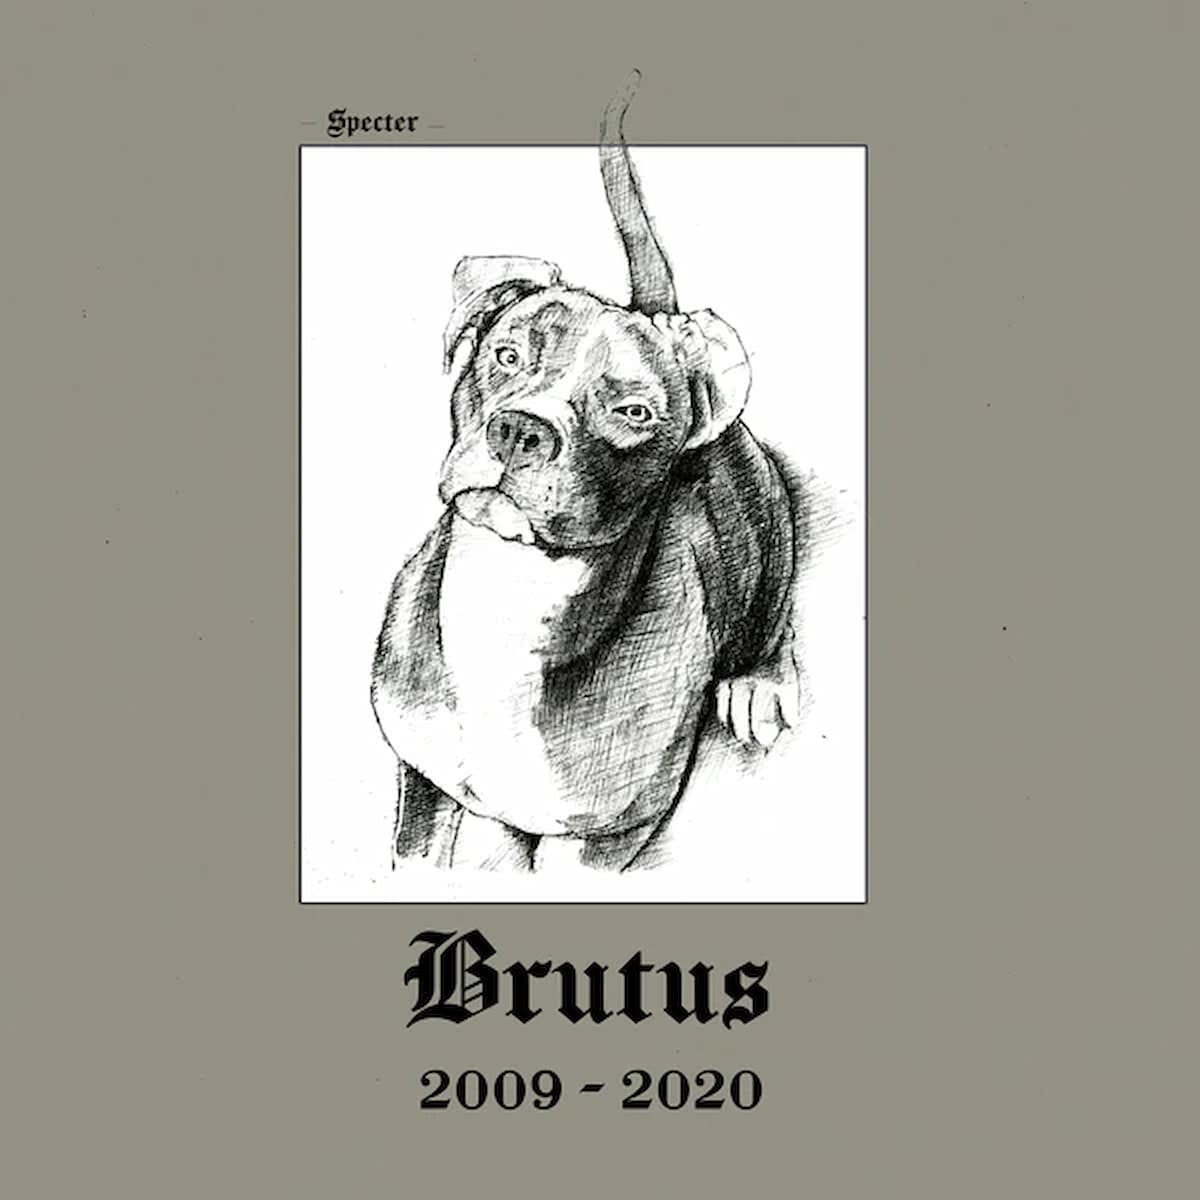 Brutus 2009-2020 / Specter